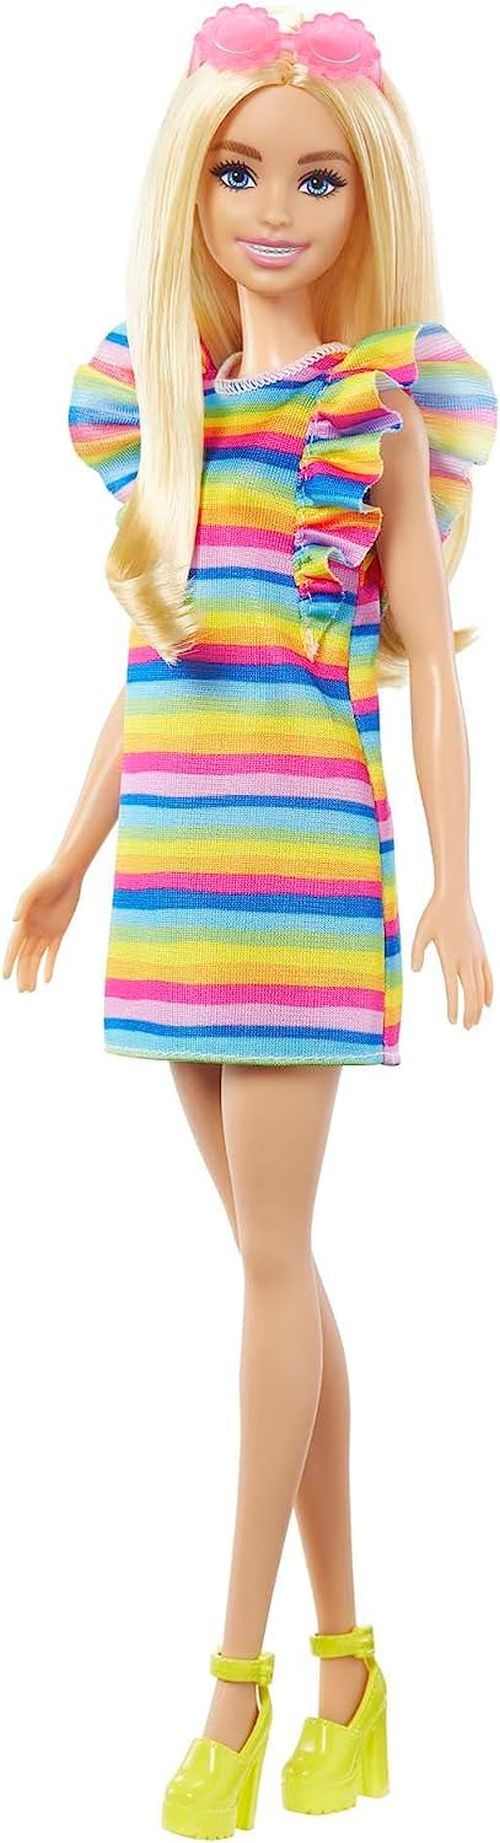 MATTEL Barbie In A Colorful Striped Dress - BARBIE DOLLS